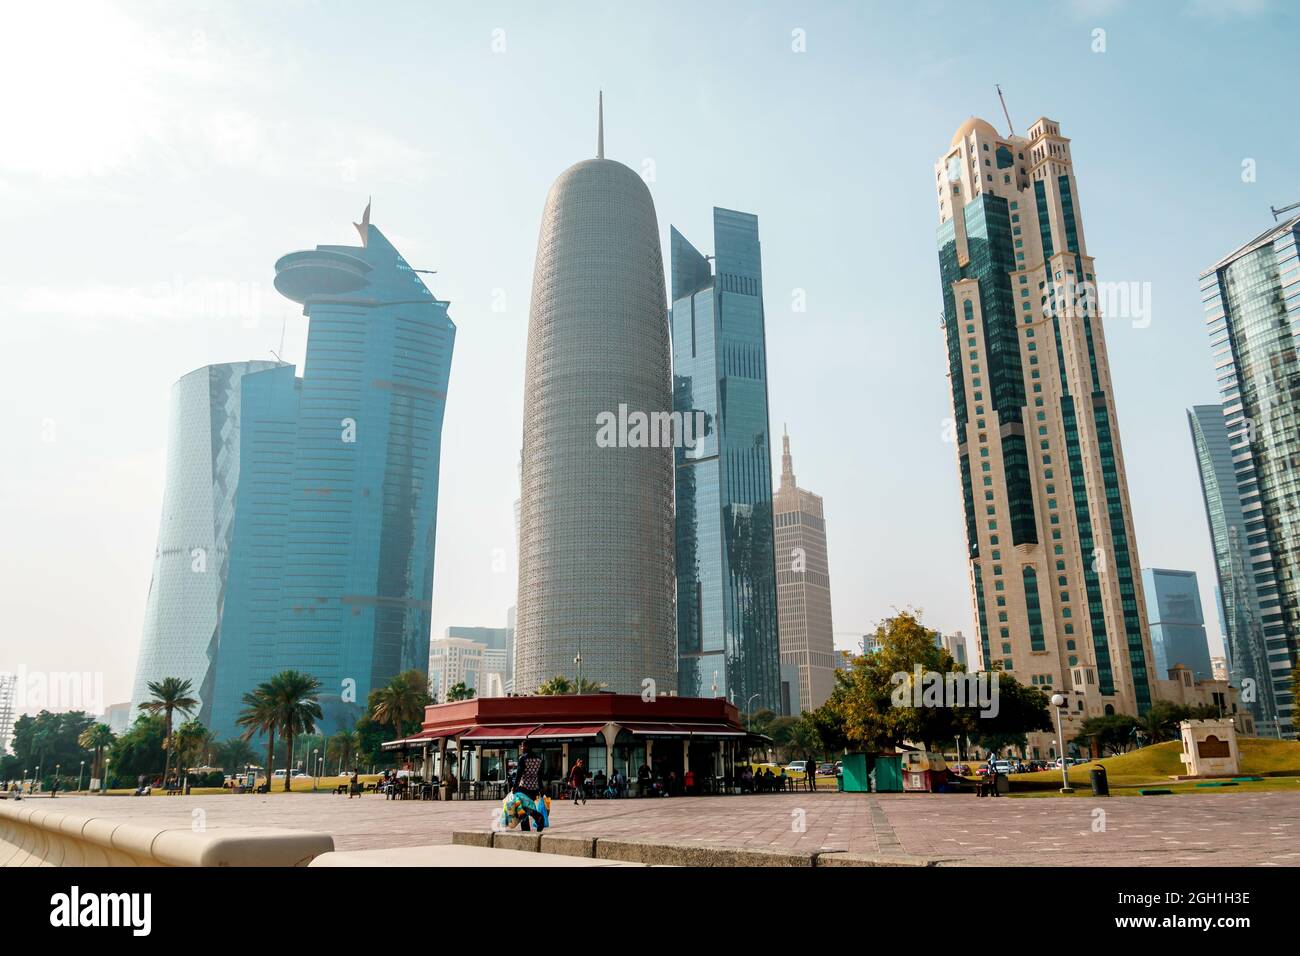 DOHA, QATAR - 01 mars 2019 : une belle vue de la ville avec des gratte-ciels au Qatar, Doha Banque D'Images